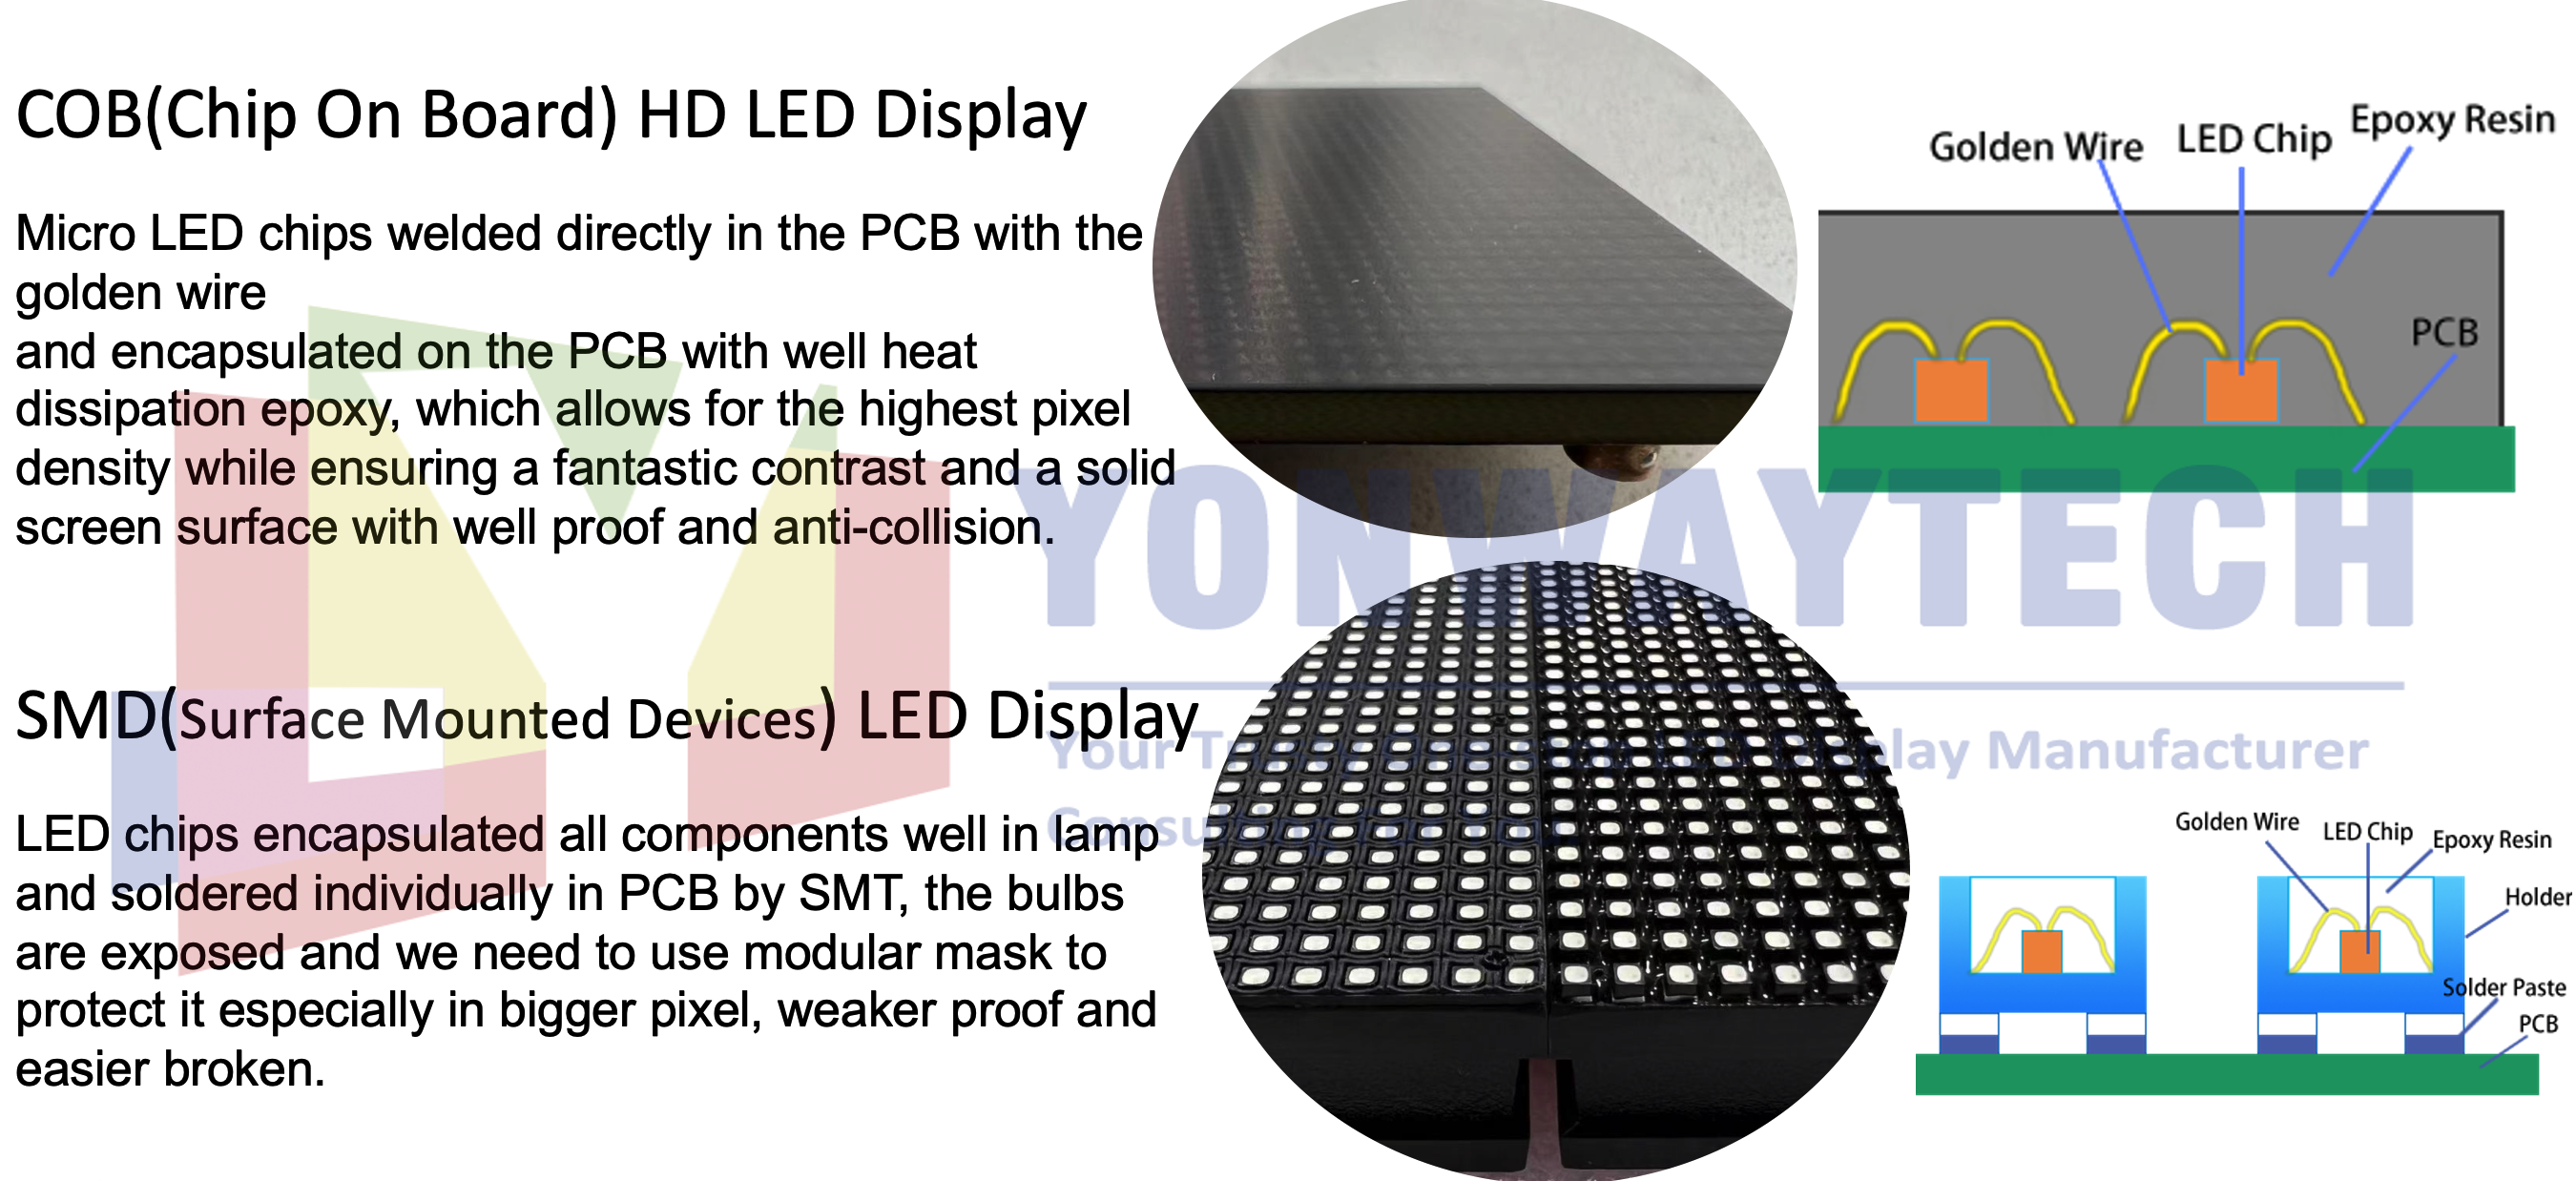 Comparación de pantalla LED smd y cob yonwaytech